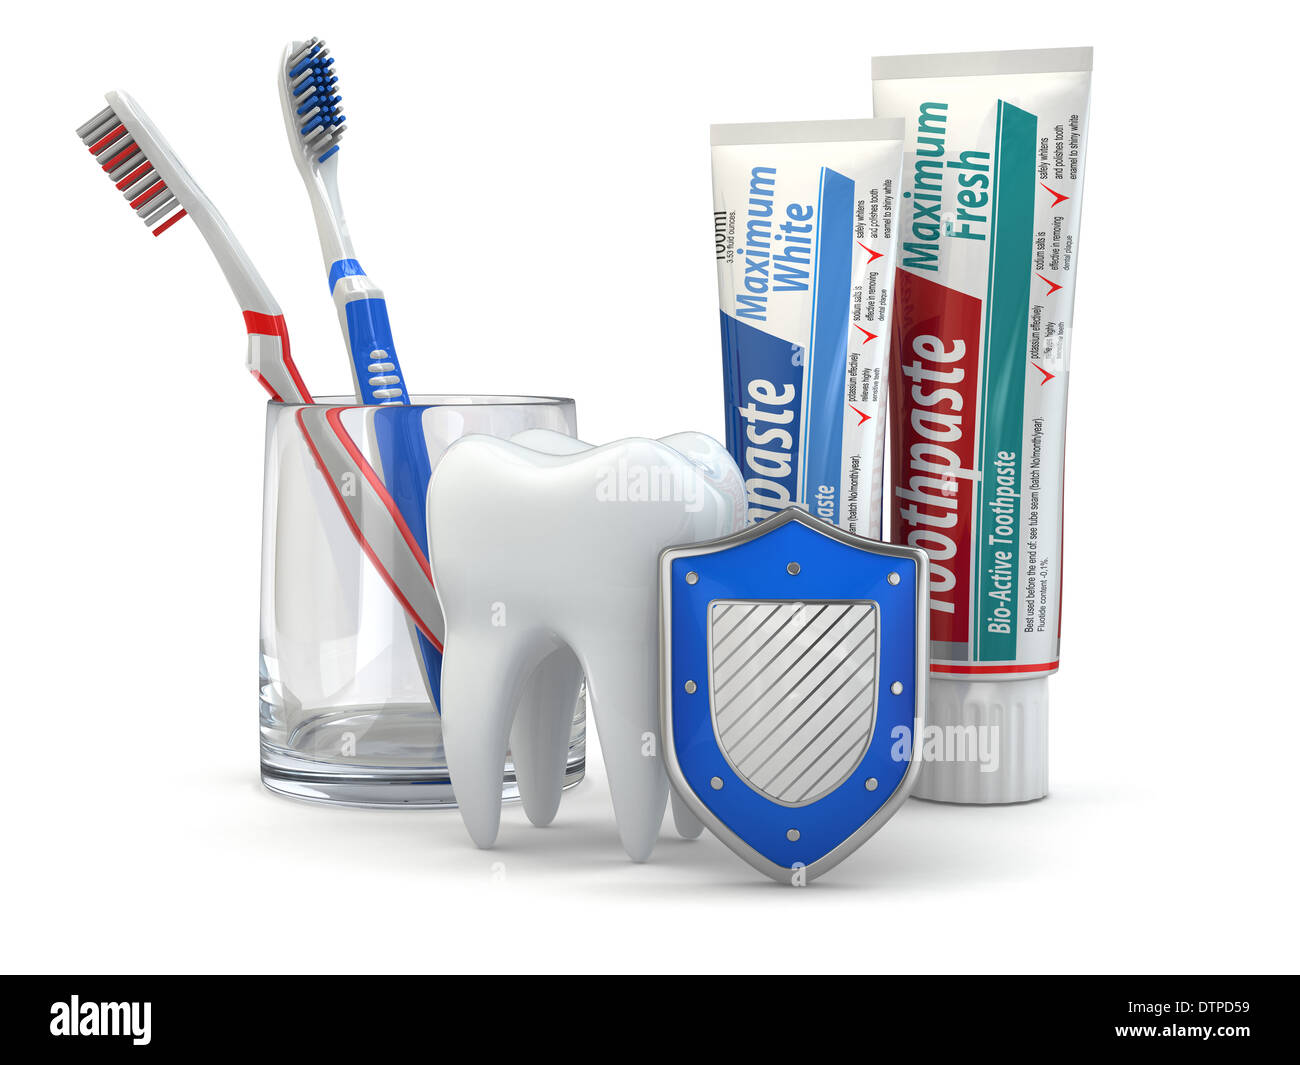 Zahnschutz, Zahn, Schild, Zahnpasta und Zahnbürsten. 3D Stockfotografie -  Alamy